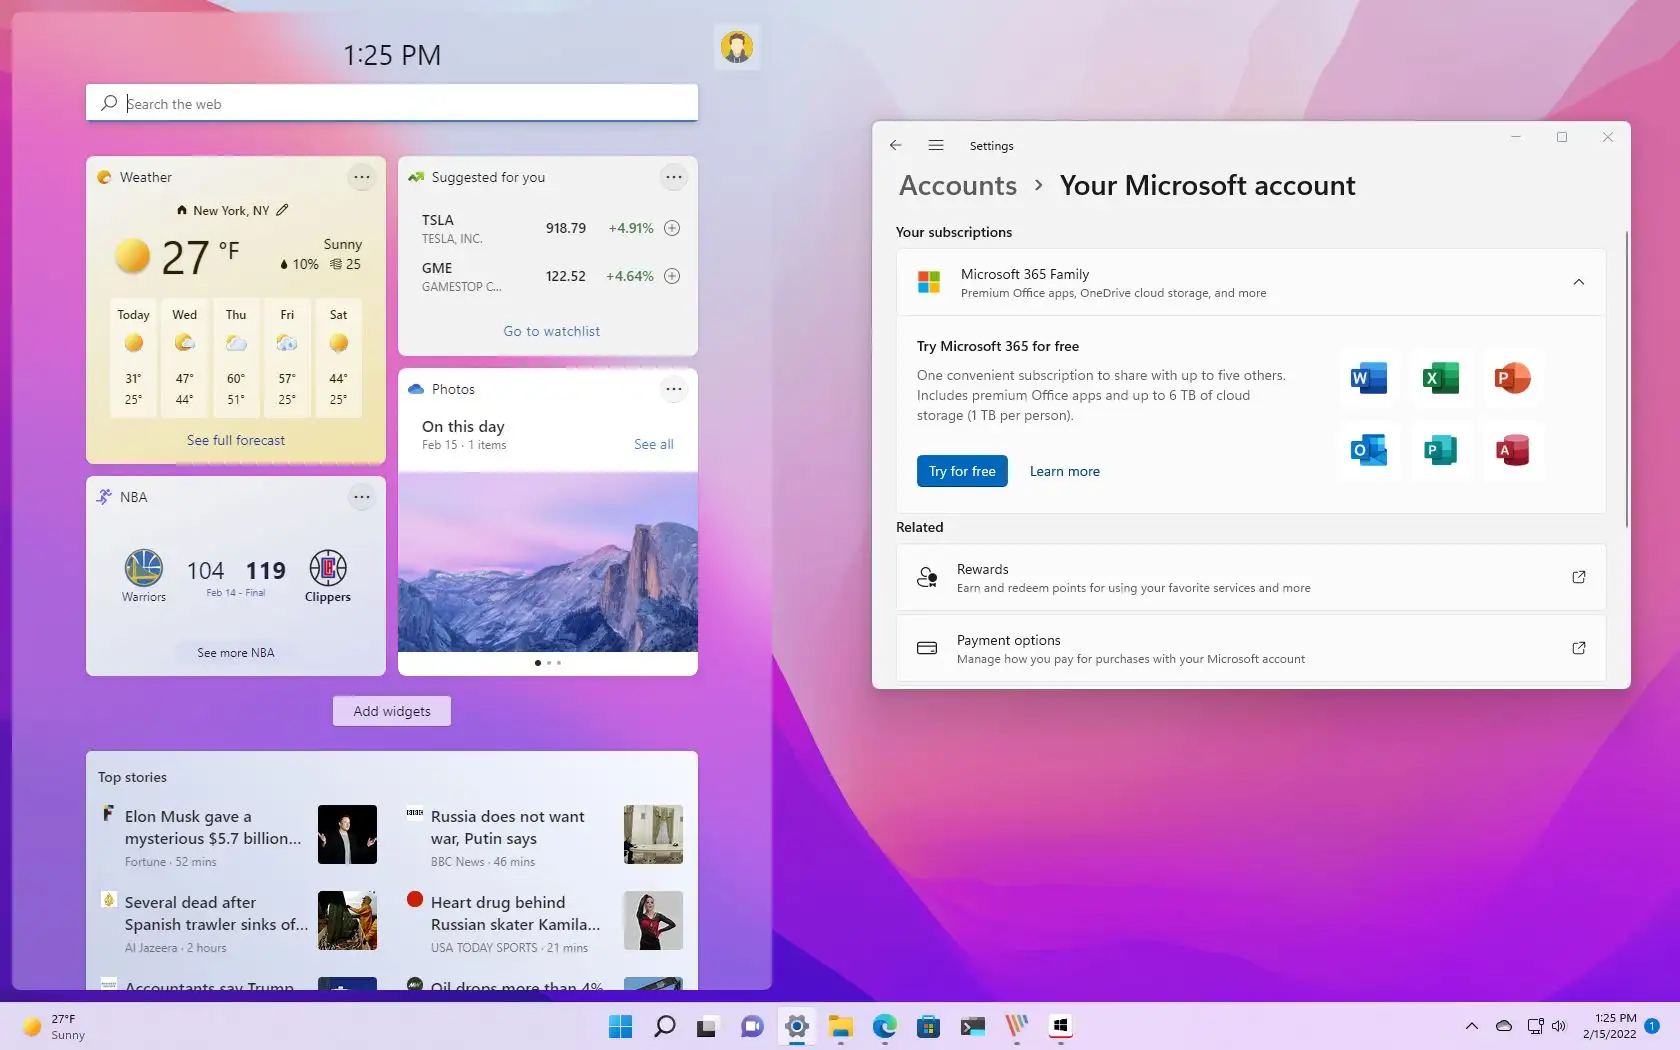 Windows 11 vastaanottaa uusia ominaisuuksia säännöllisesti suurten julkaisujen ulkopuolella